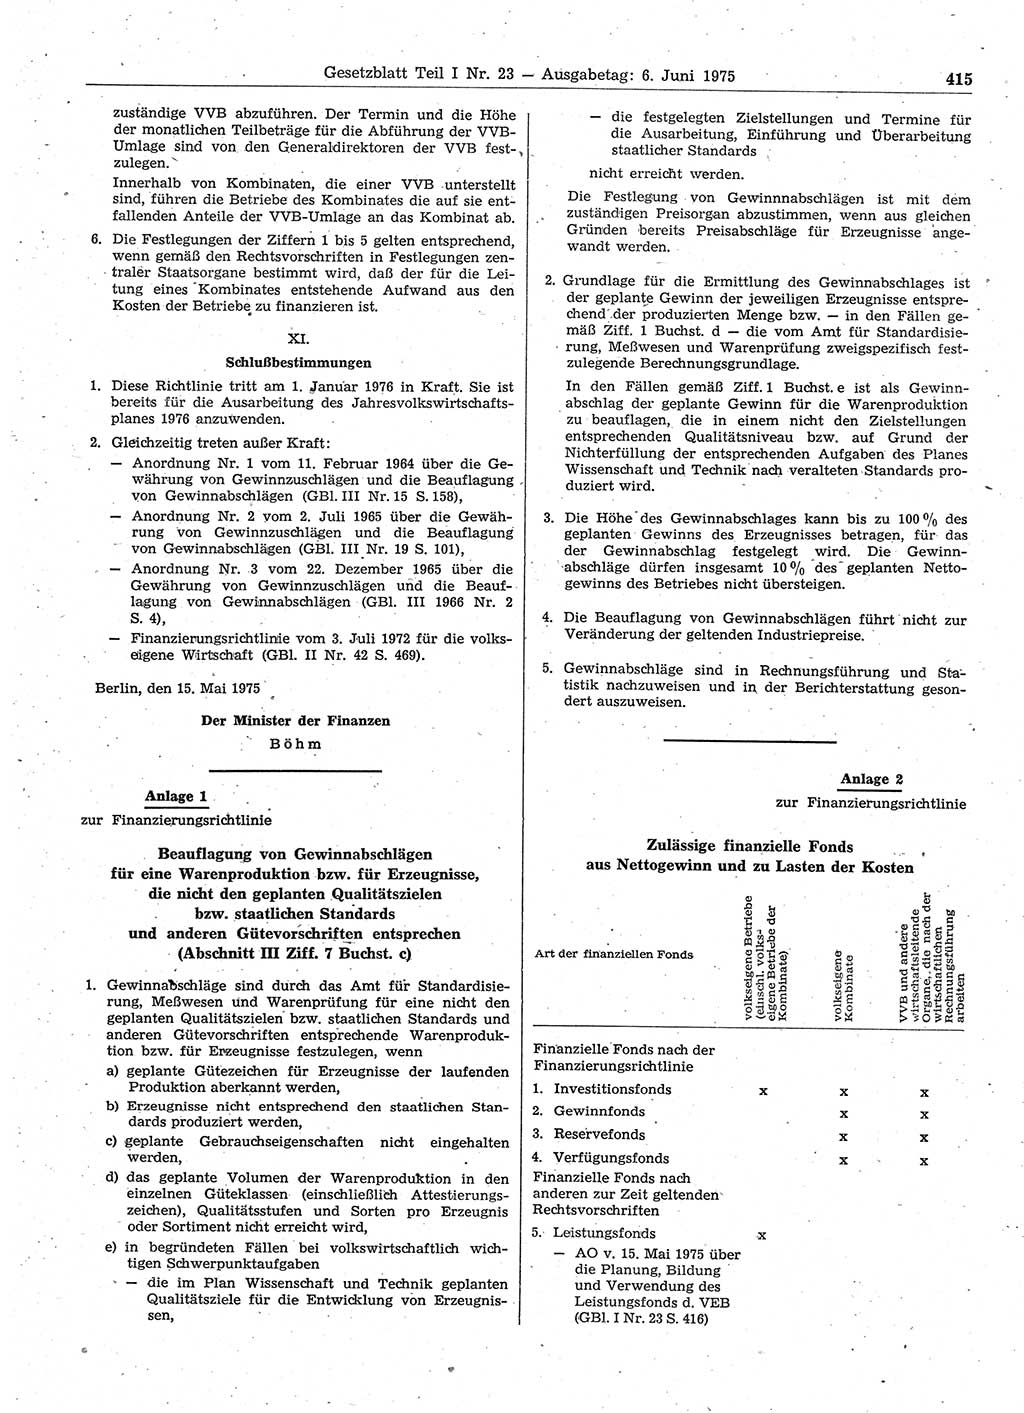 Gesetzblatt (GBl.) der Deutschen Demokratischen Republik (DDR) Teil Ⅰ 1975, Seite 415 (GBl. DDR Ⅰ 1975, S. 415)